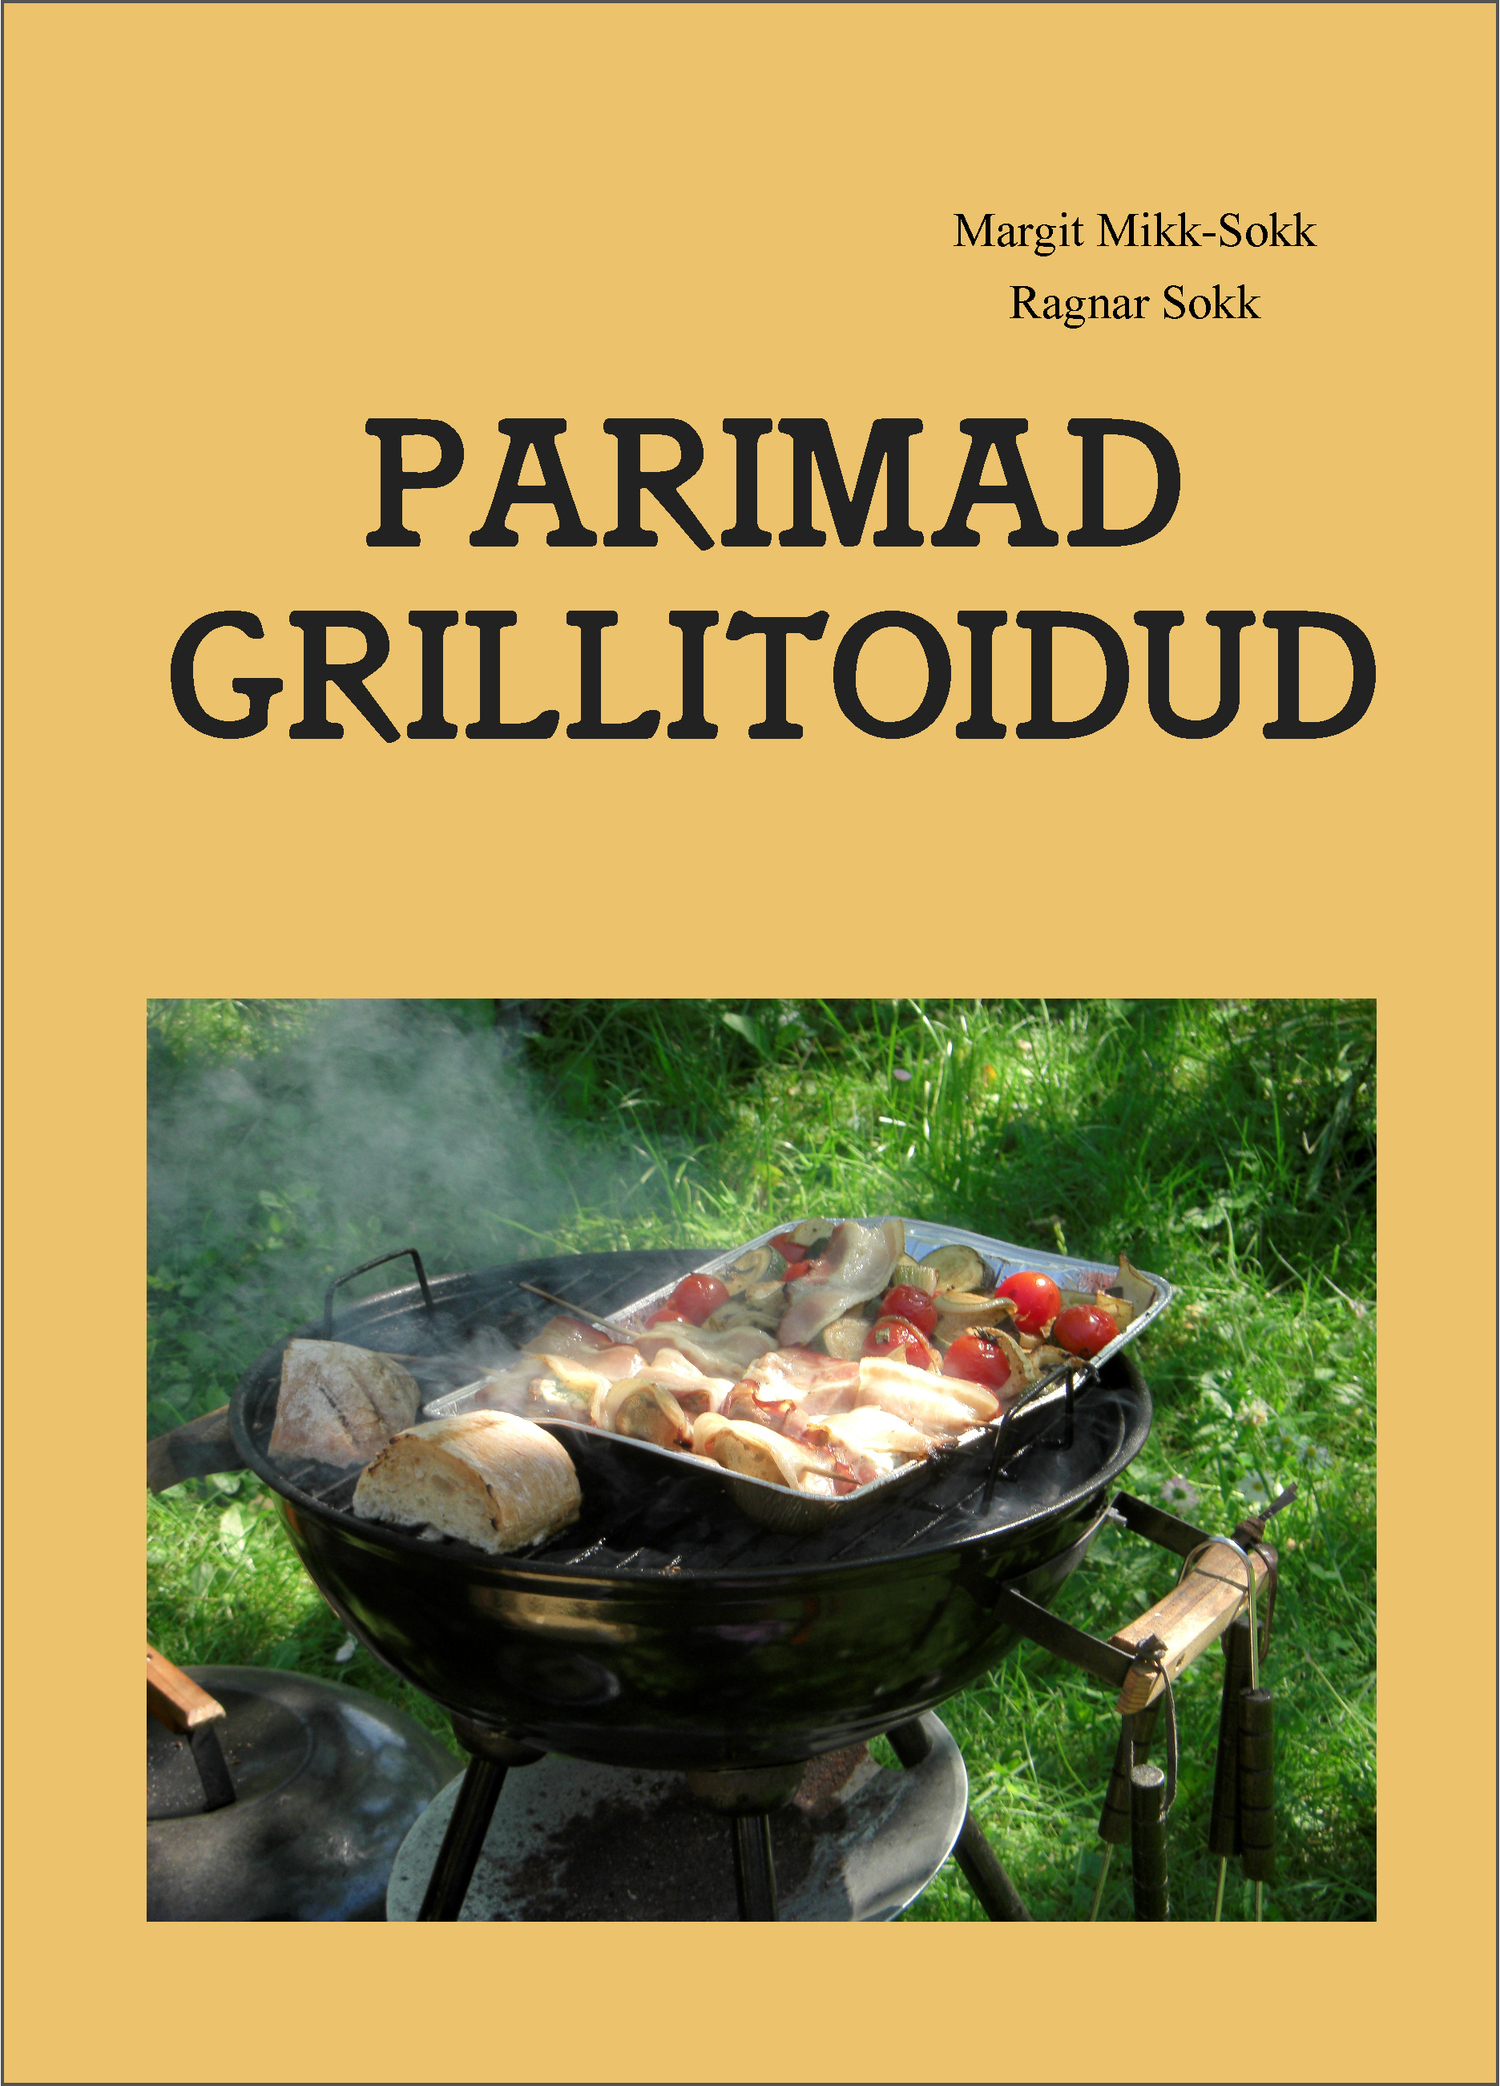 Книга Parimad grillitoidud из серии , созданная Ragnar Sokk, Margit Mikk-Sokk, может относится к жанру Зарубежная прикладная и научно-популярная литература, Кулинария. Стоимость электронной книги Parimad grillitoidud с идентификатором 35743027 составляет 681.82 руб.